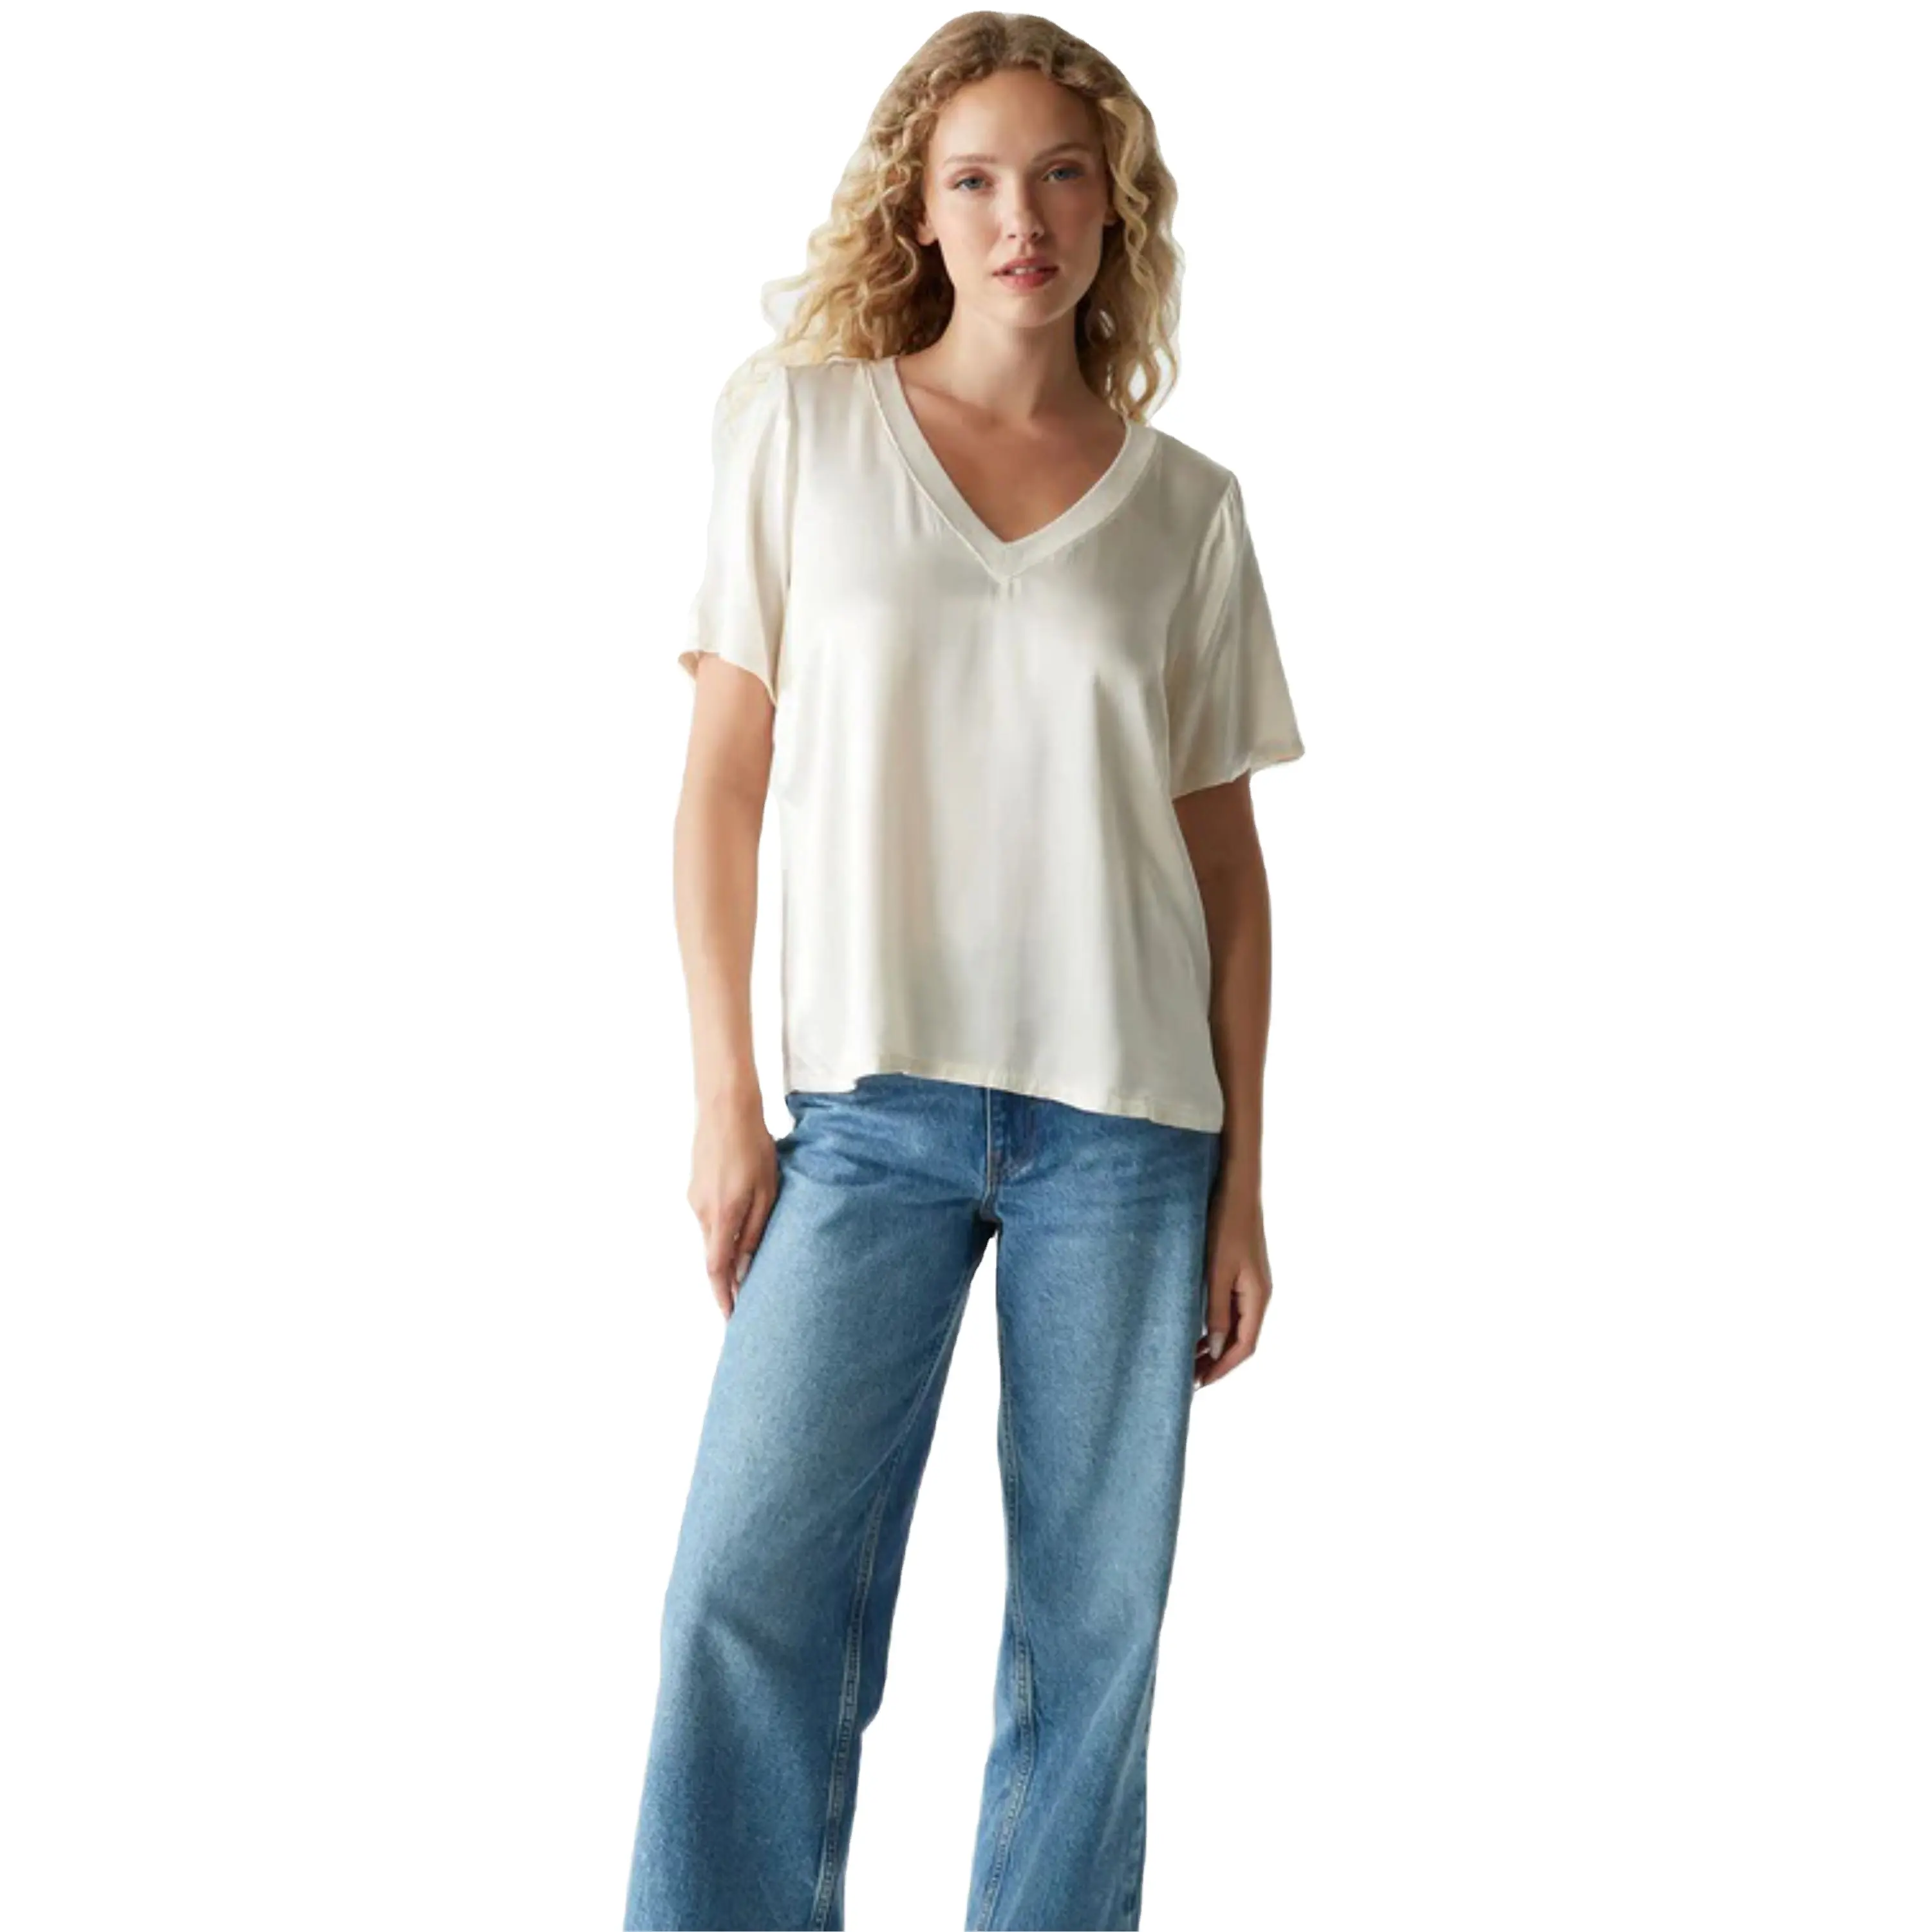 Camiseta elegante con cuello en V para mujer: mezcla de algodón suave, perfecta para ropa informal, disponible en varios colores y tamaños